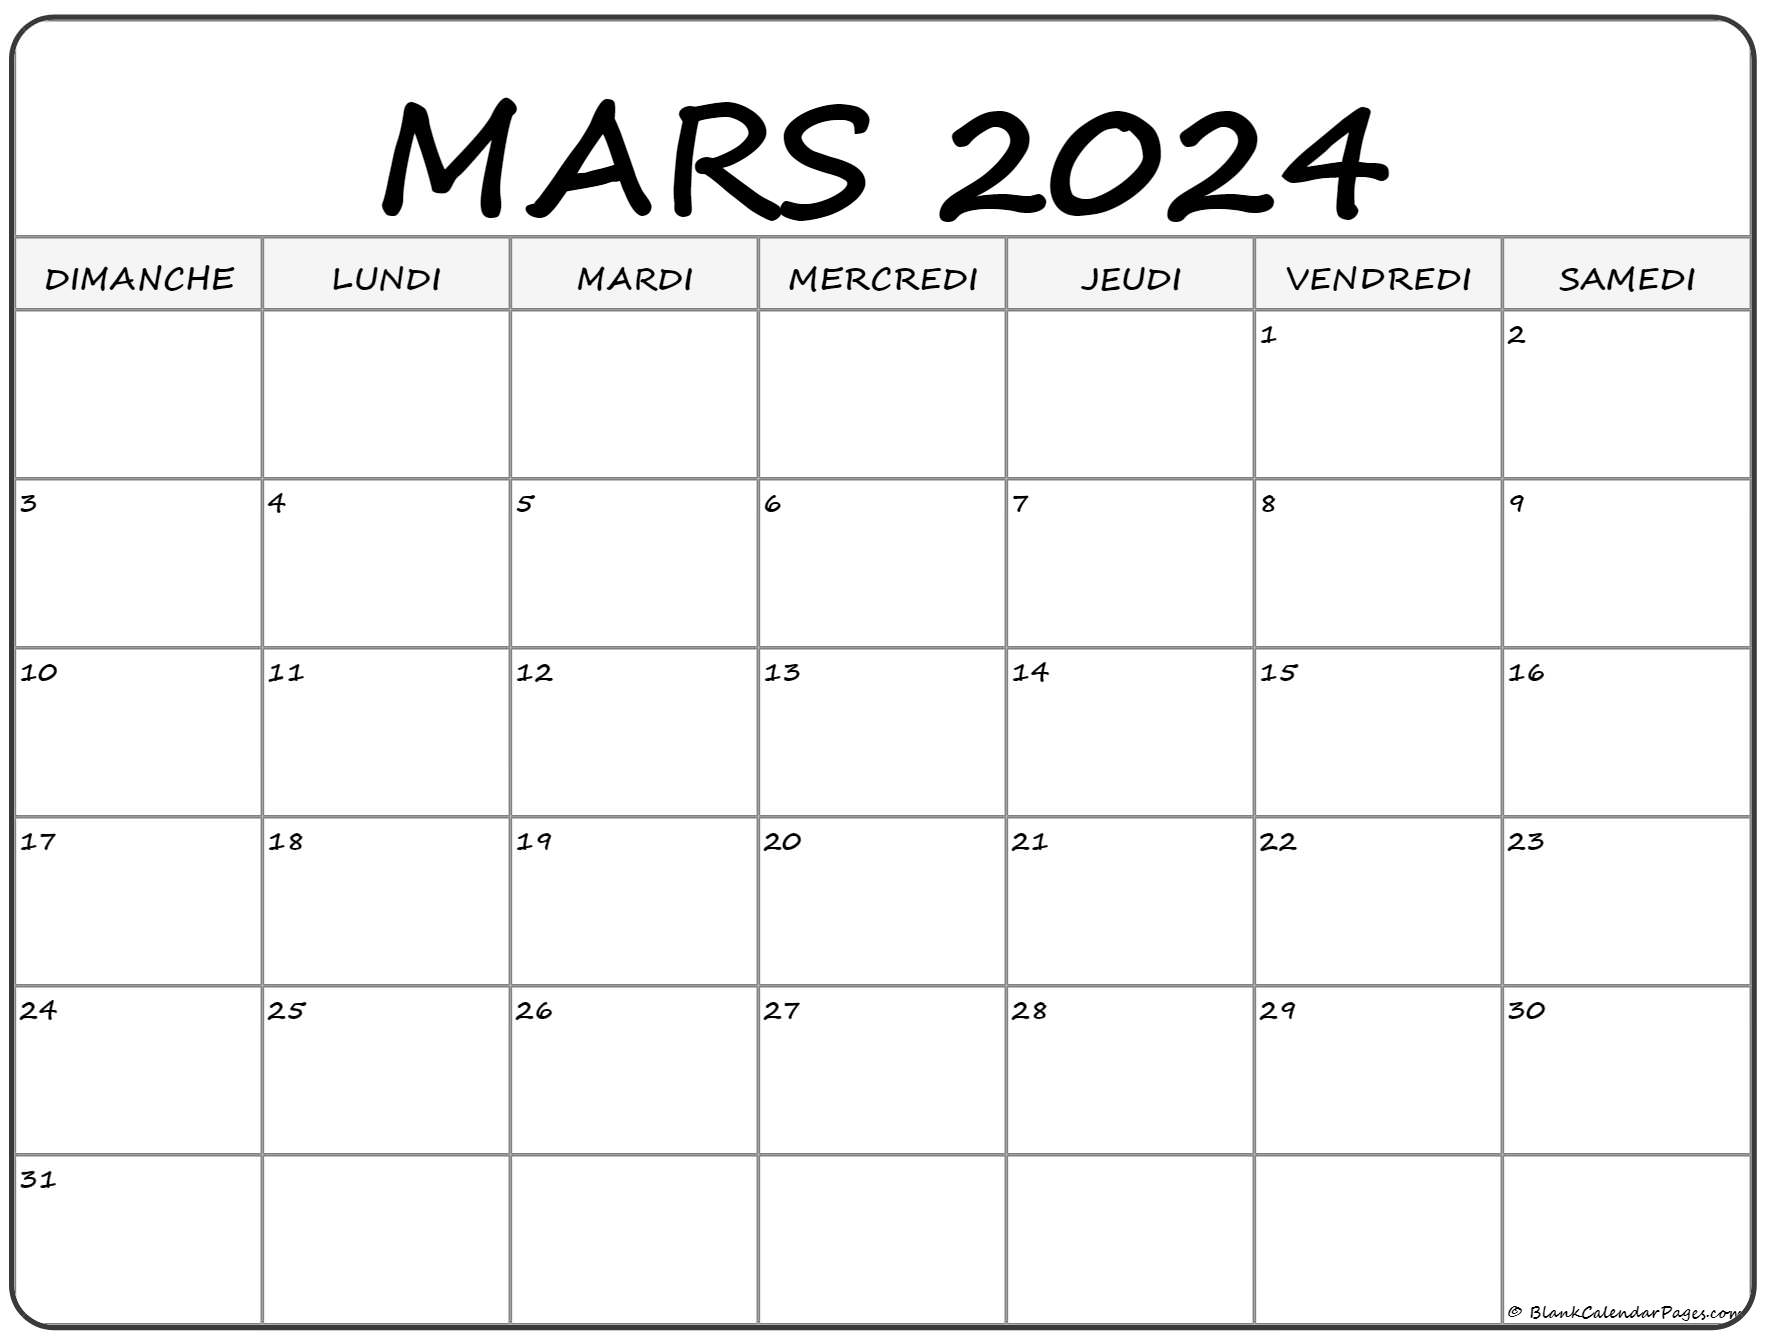 Calendrier à Imprimer Mars 2022 mars 2022 calendrier imprimable | Calendrier gratuit